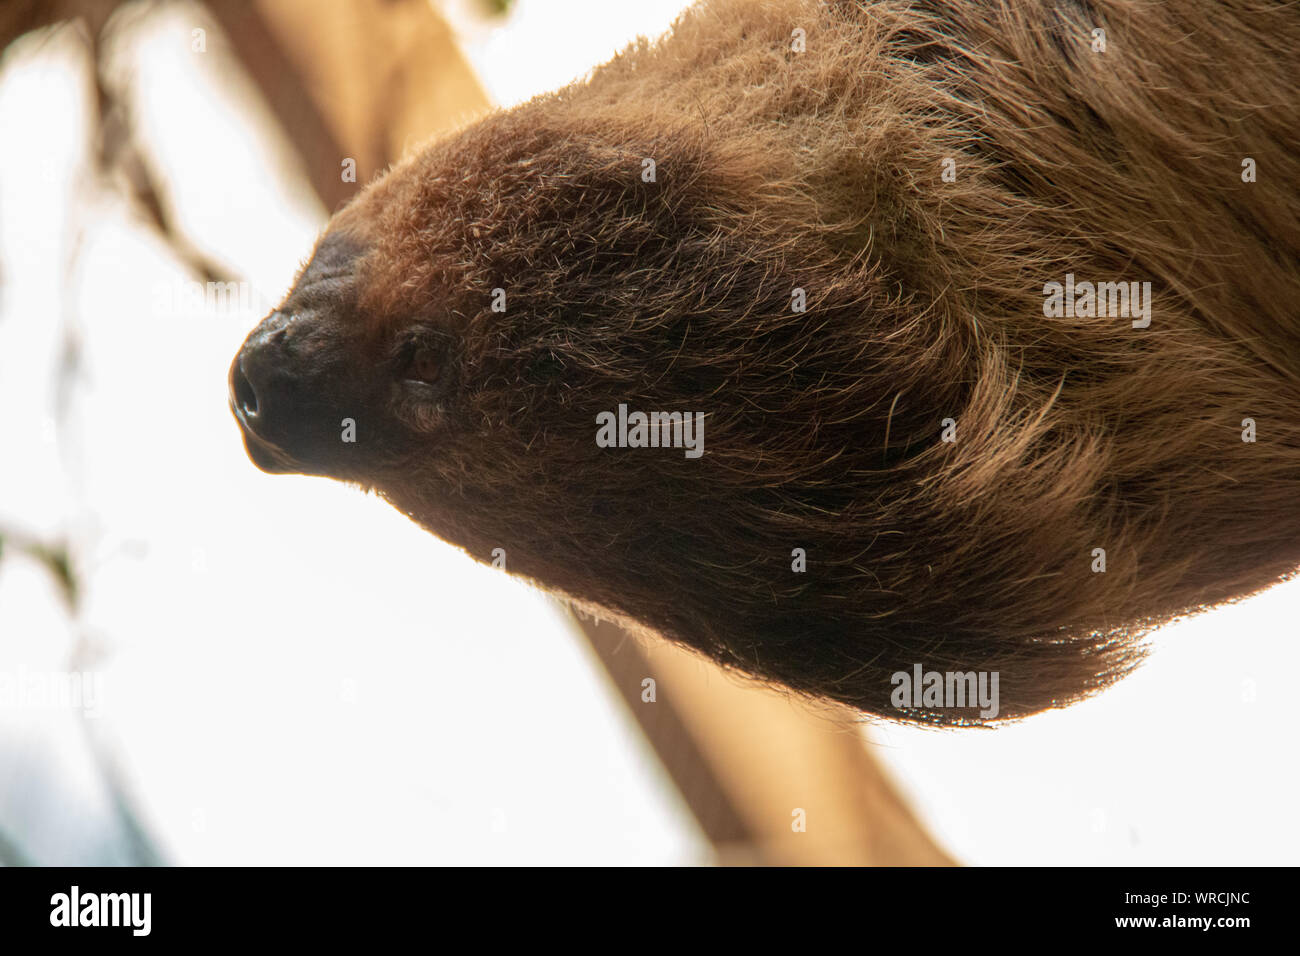 Vue rapprochée de la tête d'un à deux doigts de Linné sloth (Choloepus didactylus) tête en bas dans un arbre Banque D'Images